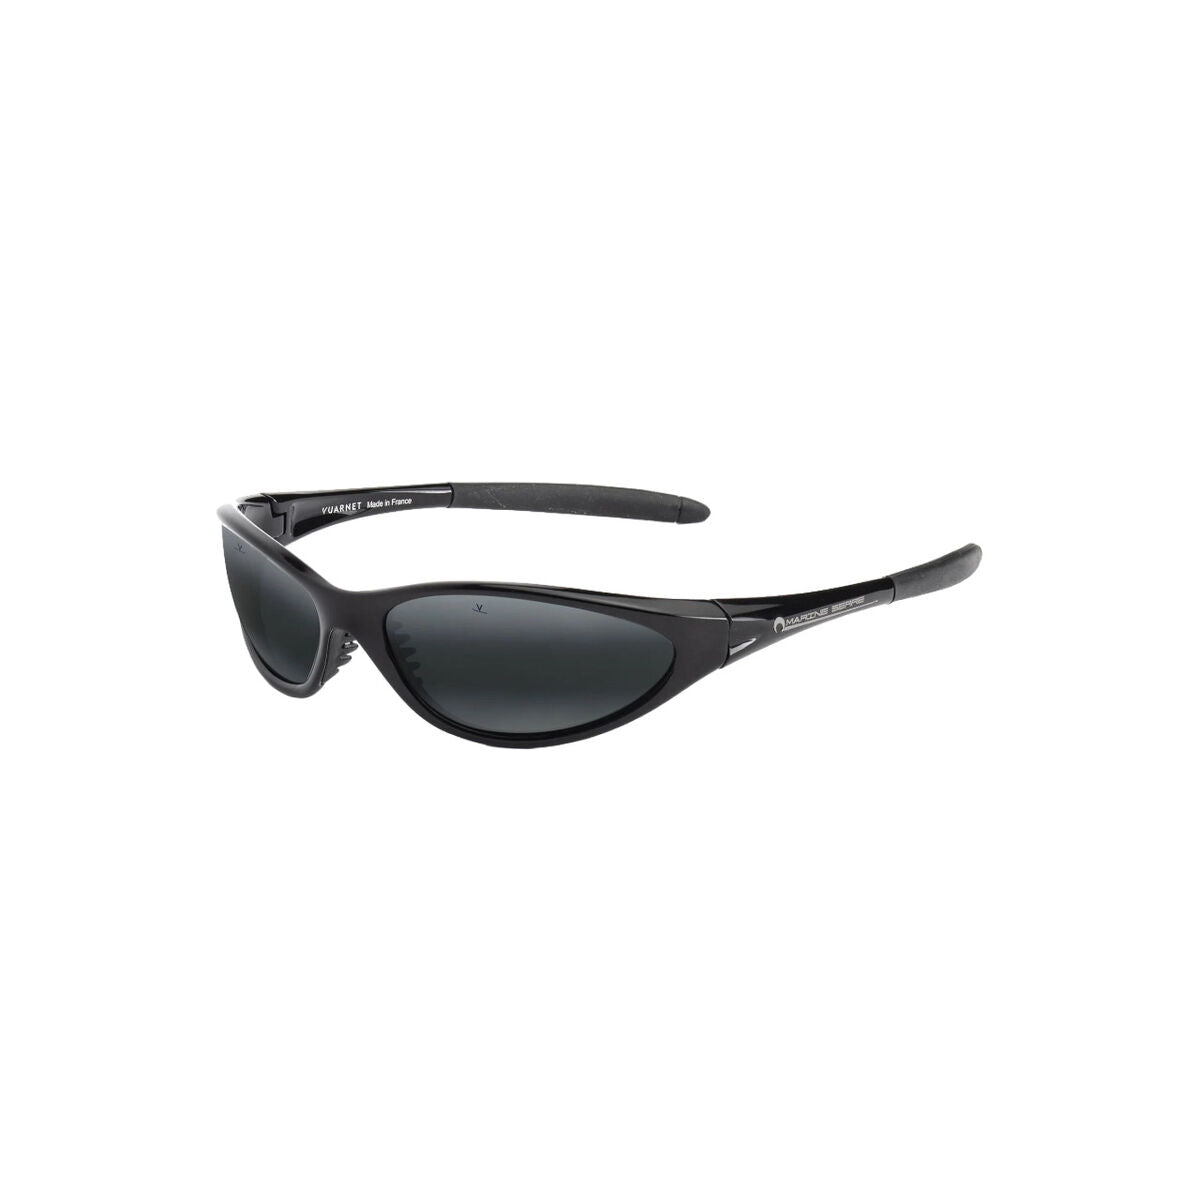 Kaufe Unisex-Sonnenbrille Vuarnet A150X001136 ø 60 mm bei AWK Flagship um € 122.00